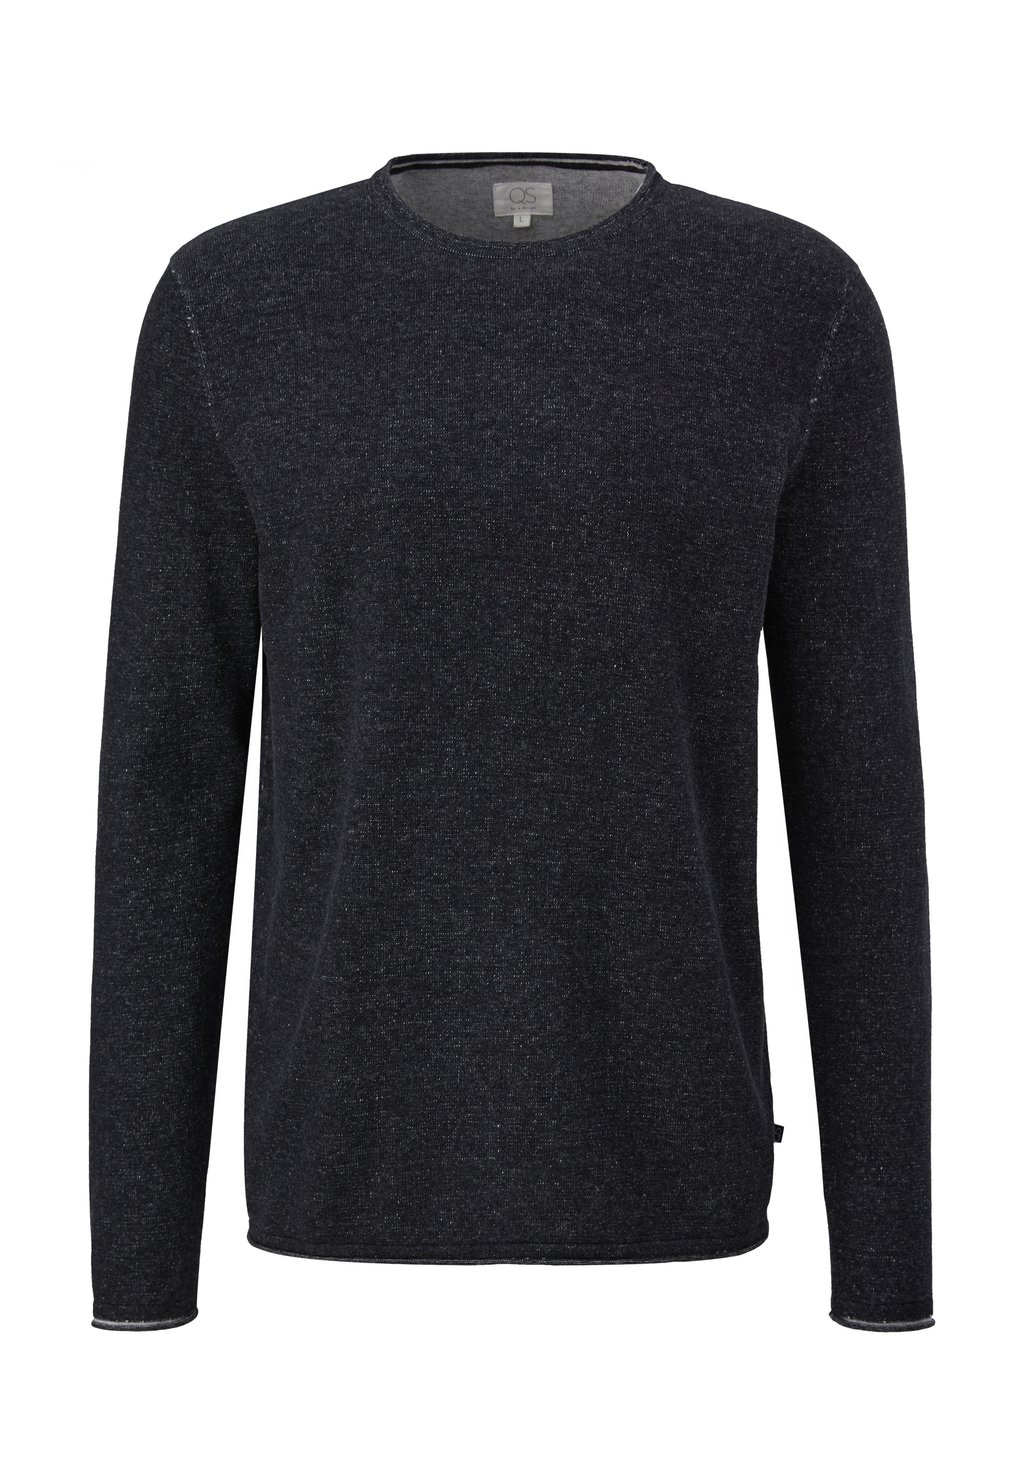 Вязаный свитер MIT ROLLSAUM QS, цвет schwarz вязаный свитер qs цвет schwarz